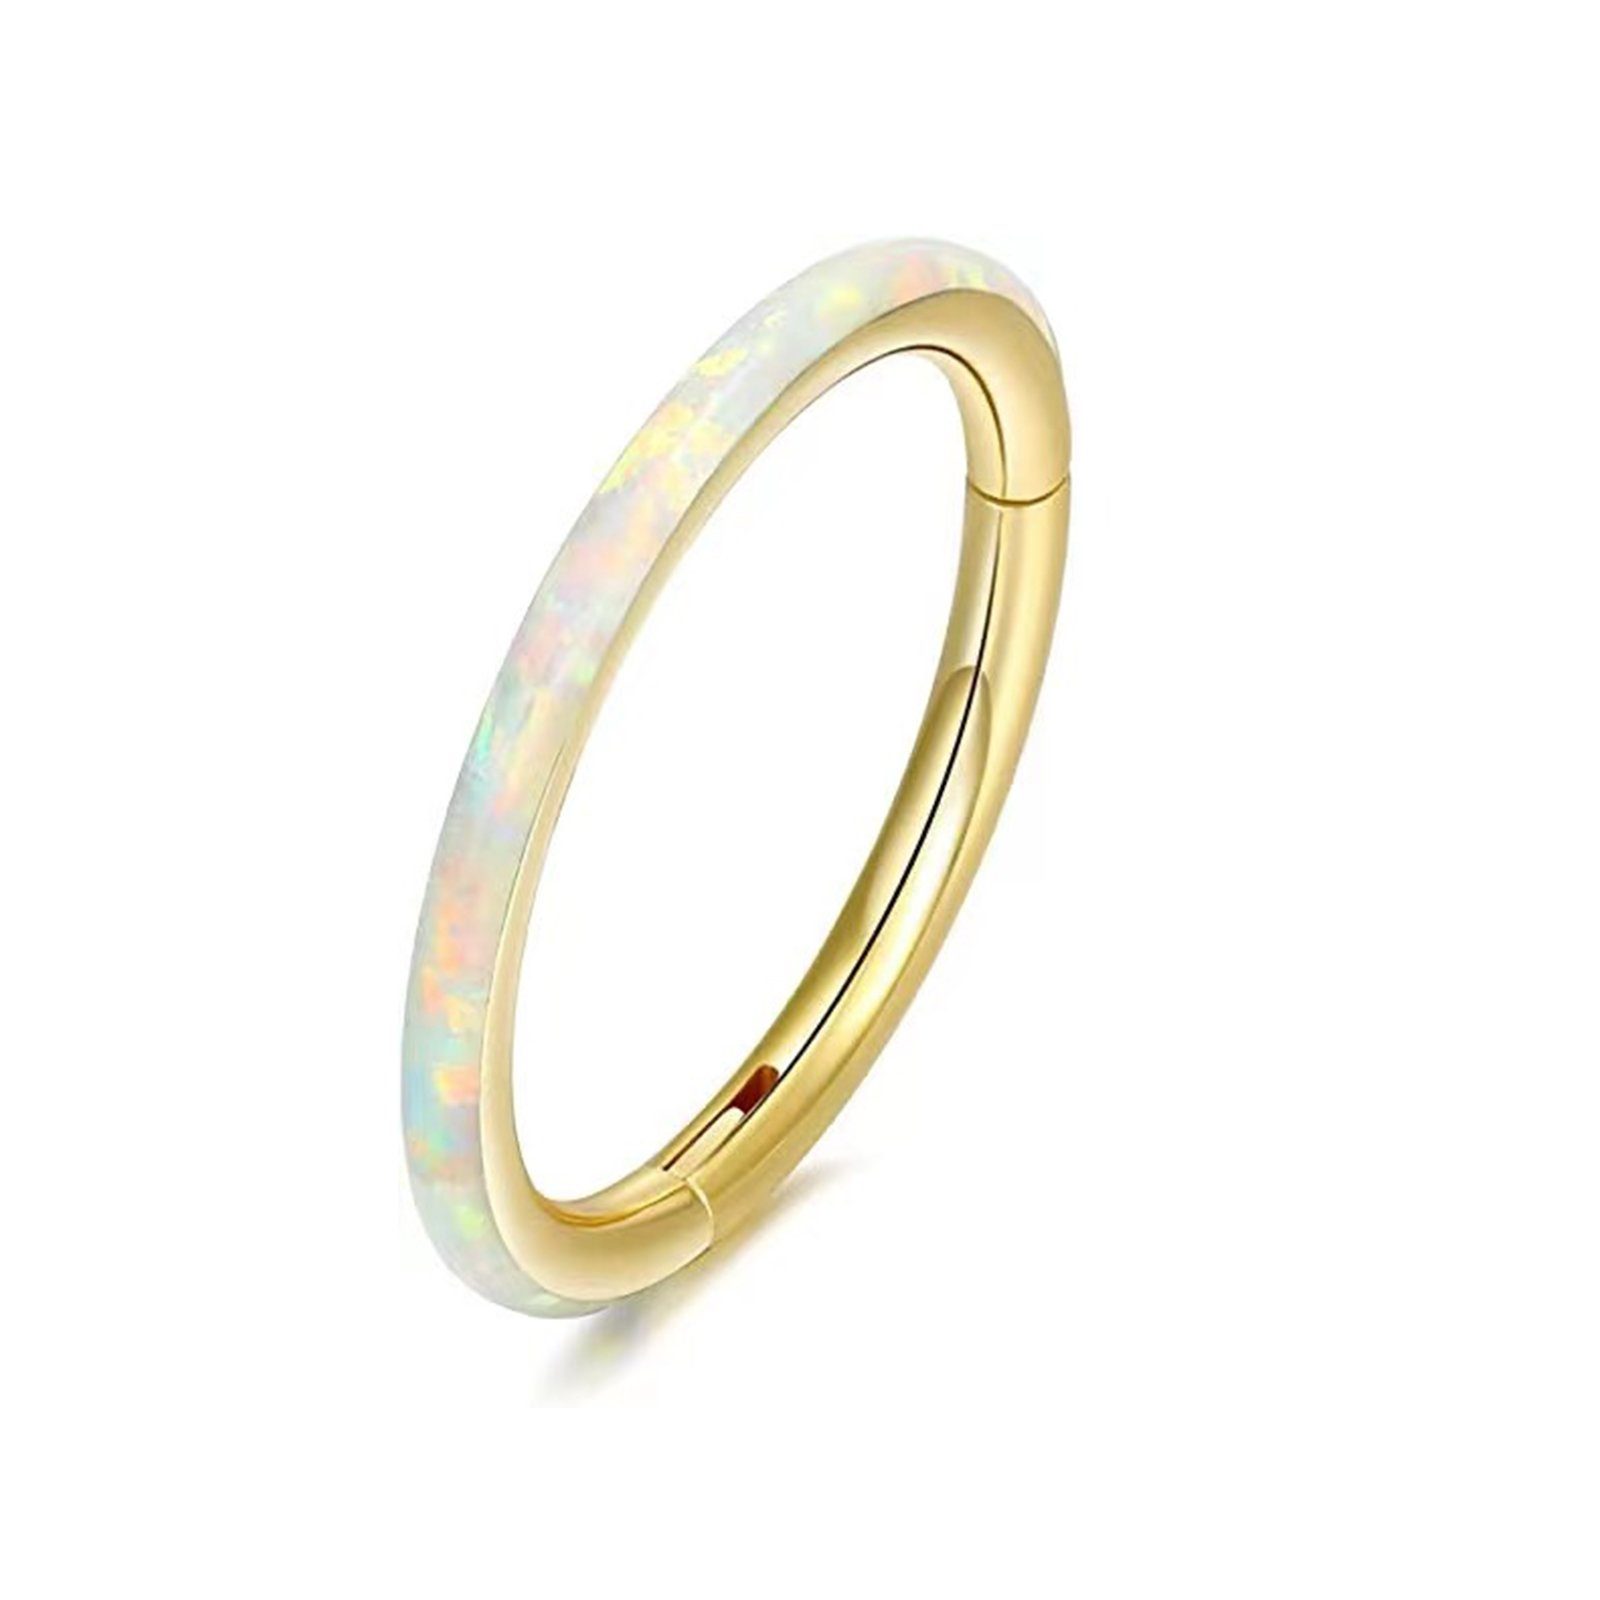 Karisma Nasenpiercing Titan G23 Hinged 8mm, Opal Stärke - Gold Weiss - (Durchmesser) Charnier/Conch Clicker Segmentring Septum Ring, 1,2mm-Weiss